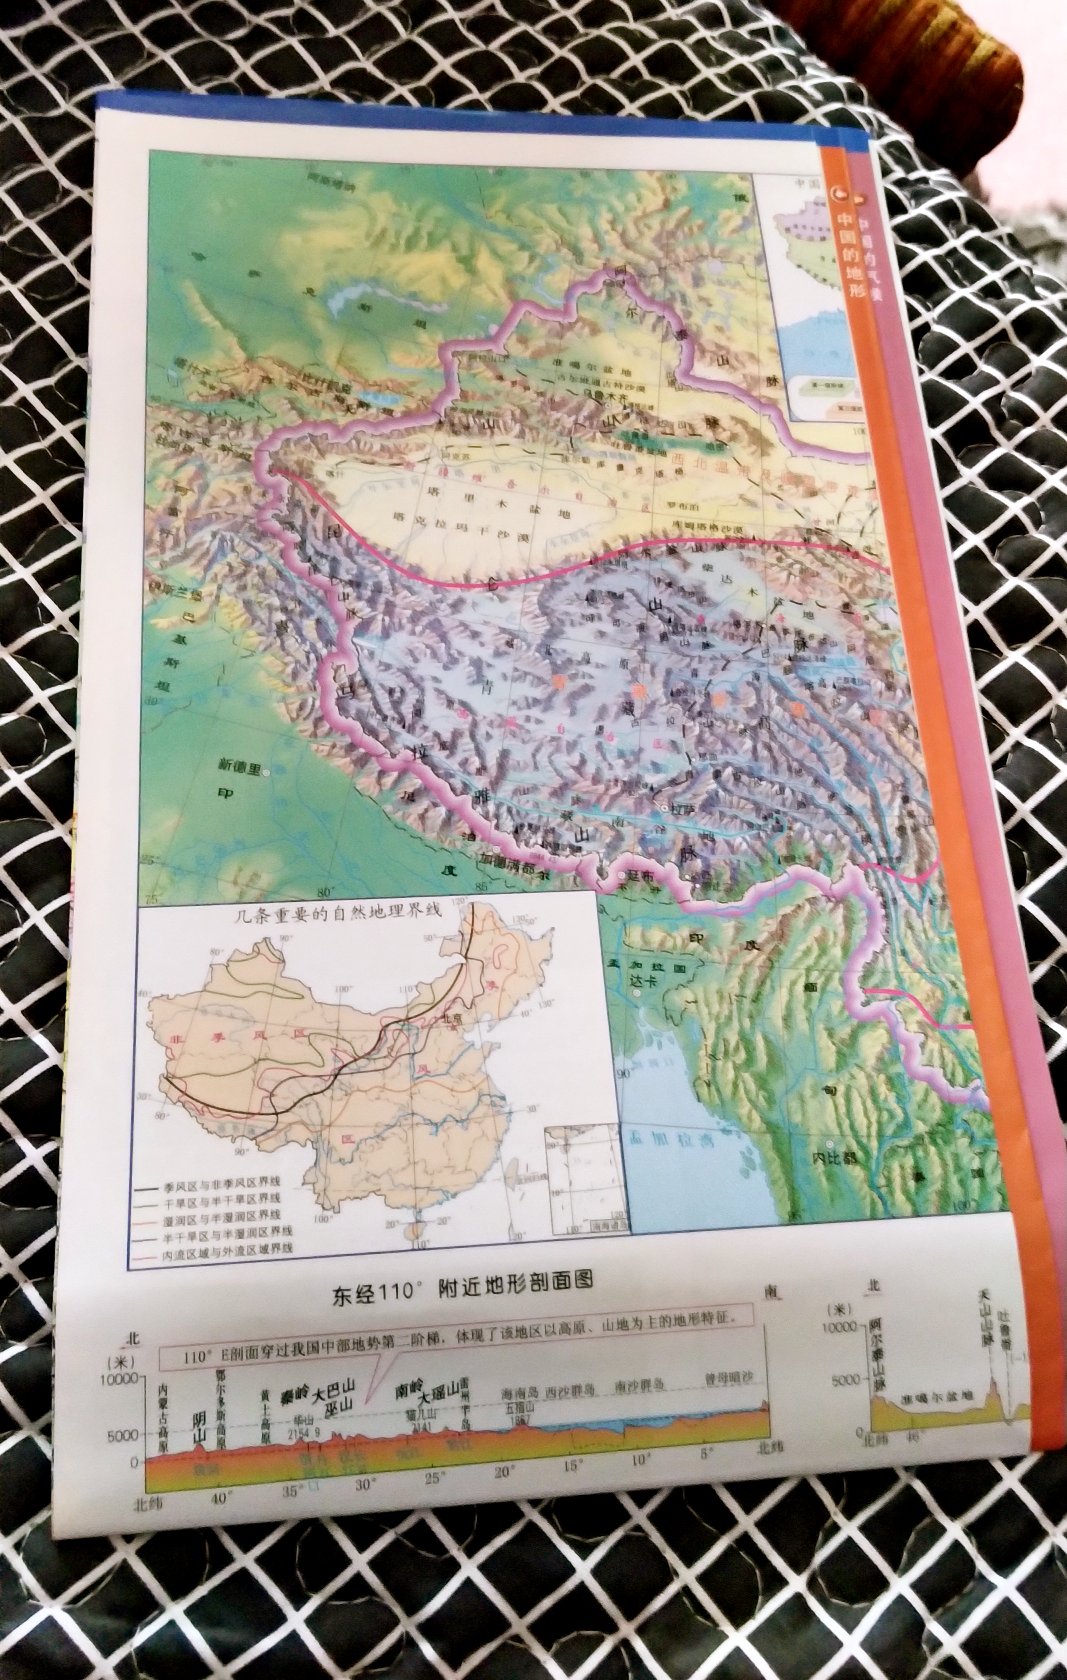 中国地理常用知识地图还是很不错的 比例尺1比900万 印刷精美有过塑 内容丰富 包含中国地形气候 农业工业 河流湖泊 对了解祖国大好河山很有帮助